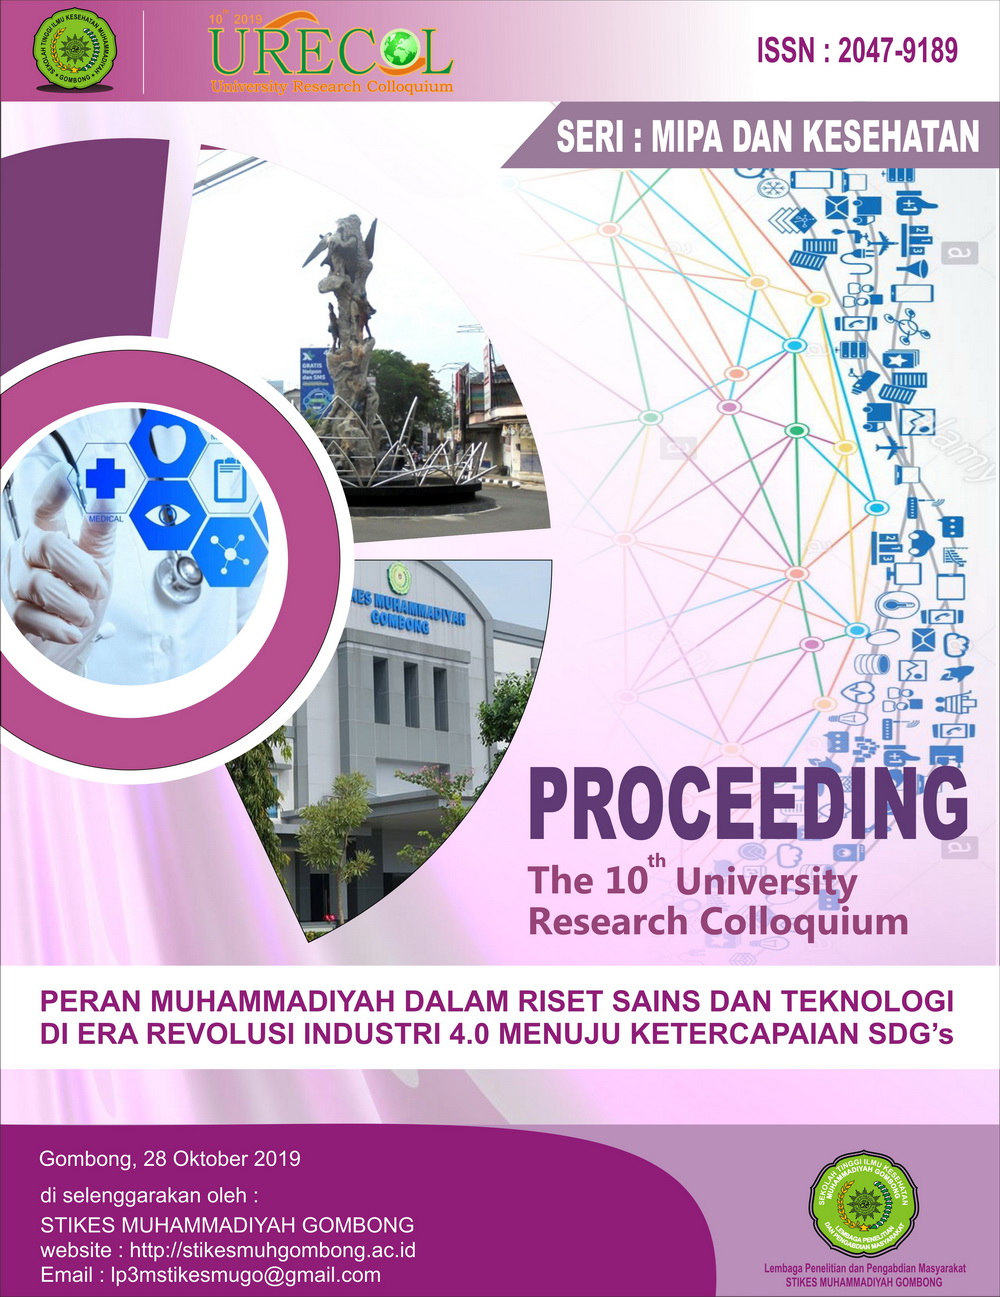 					View Proceeding of The 10th University Research Colloquium 2019: Bidang MIPA dan Kesehatan
				